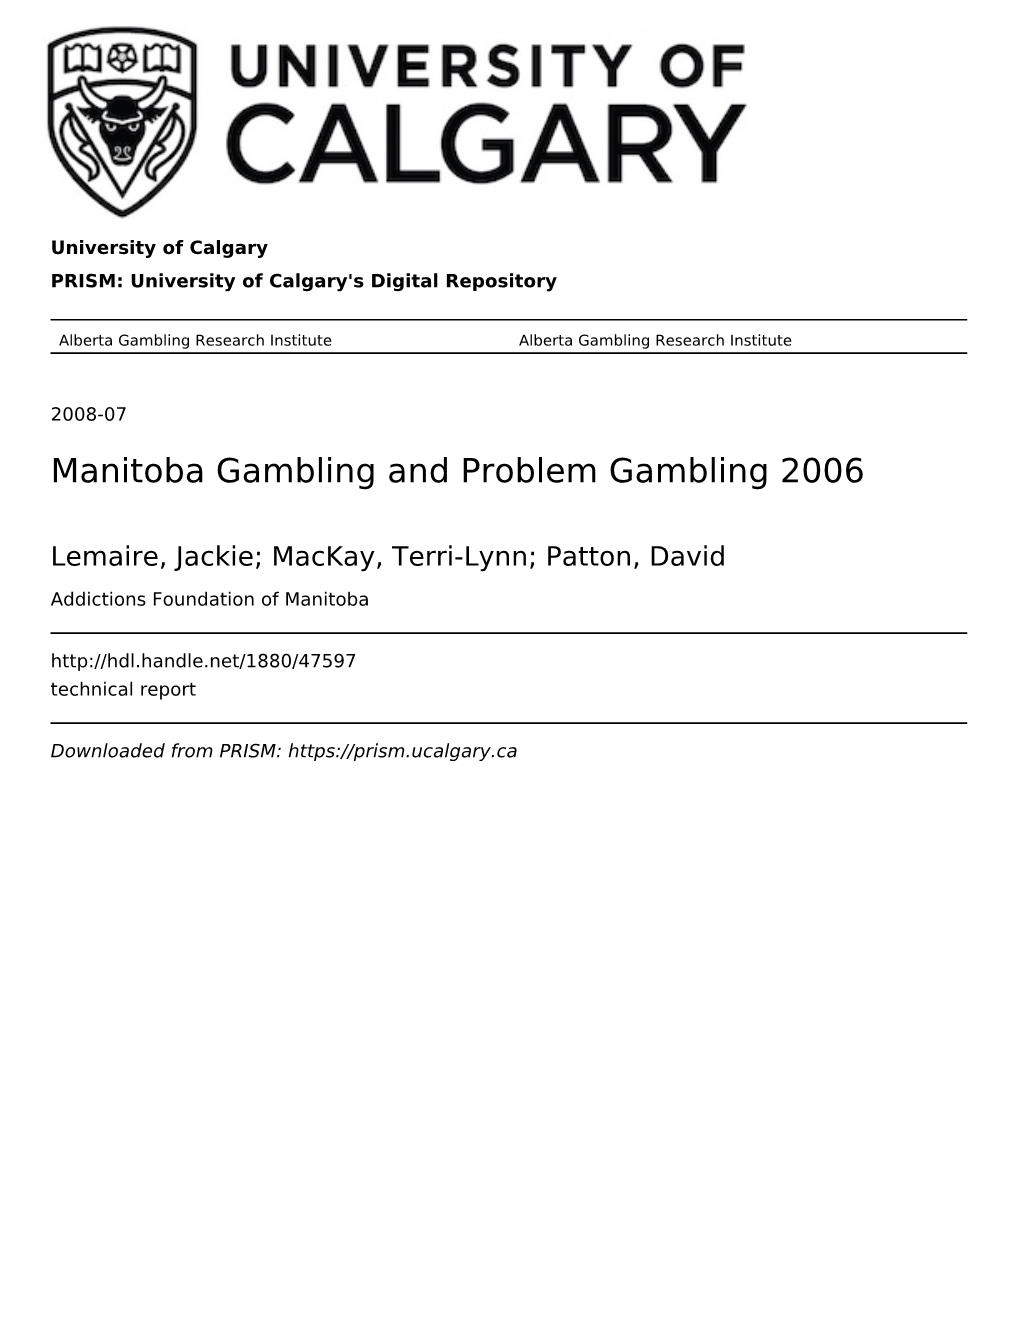 Manitoba Gambling and Problem Gambling 2006